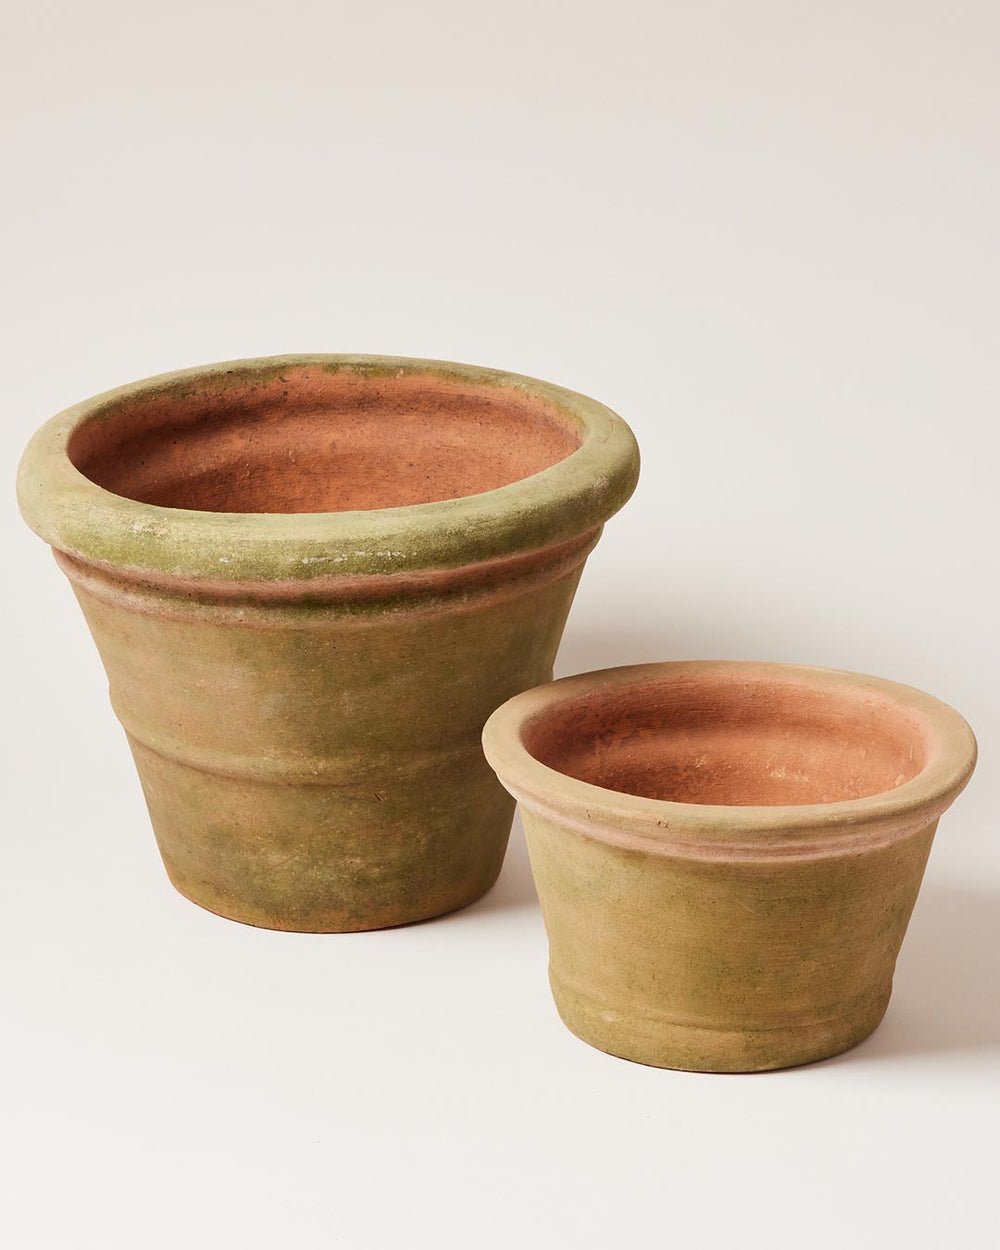 https://www.farmhousepottery.com/cdn/shop/products/Aged-Terracotta-Garden-Pot-Ridgeline2.jpg?v=1680115300&width=1000